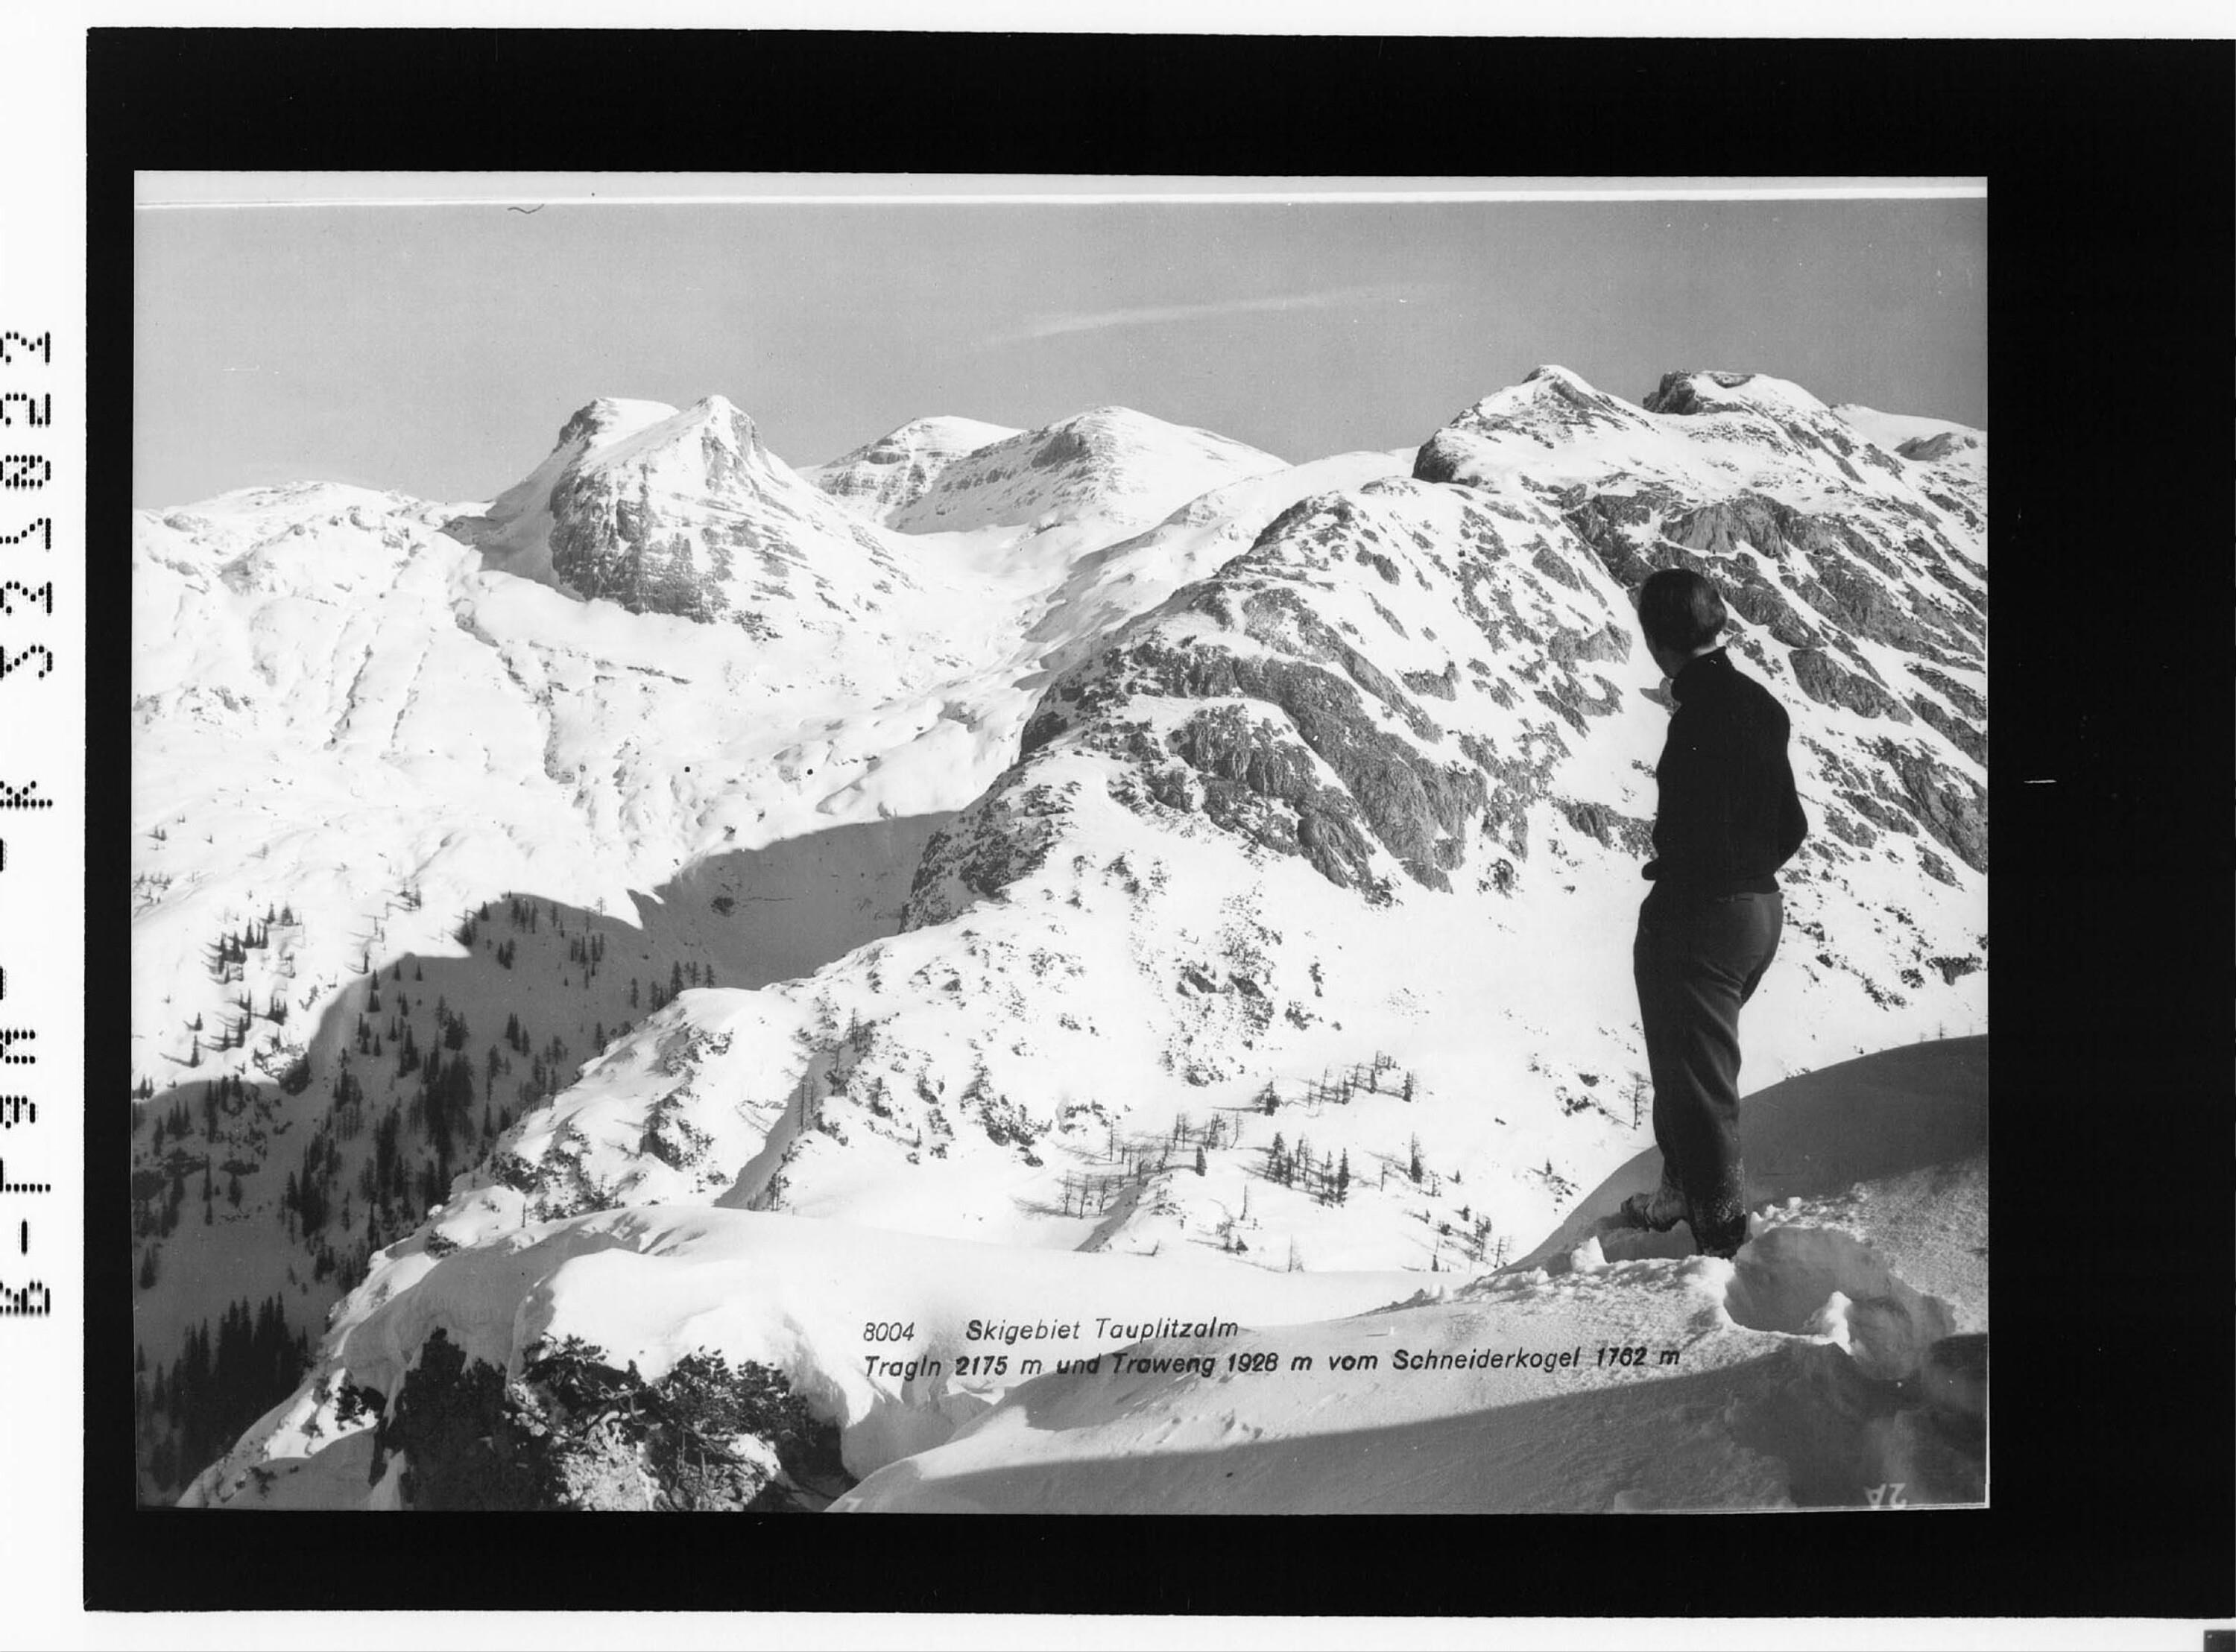 Skigebiet Tauplitzalm / Tragln 2175 m und Traweng 1928 m vom Schneiderkogel 1762 m></div>


    <hr>
    <div class=